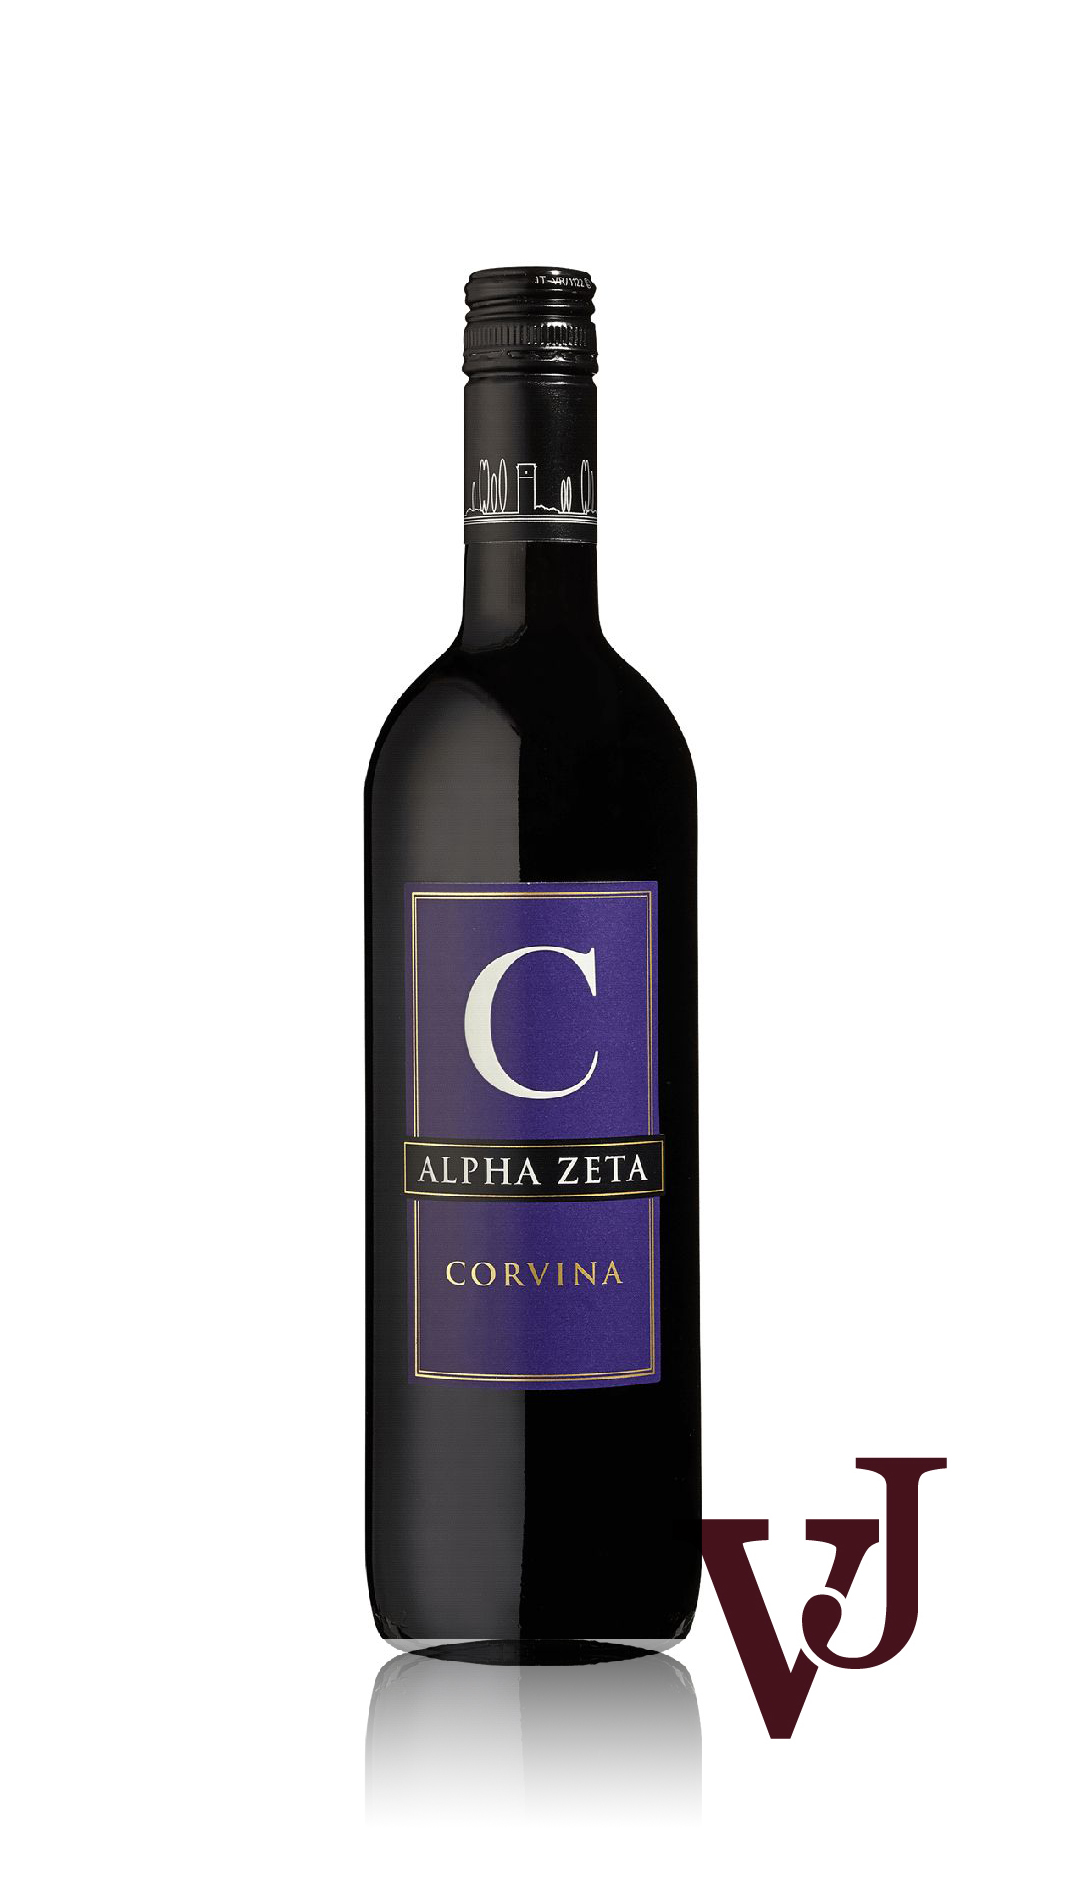 Rött Vin - C Corvina artikel nummer 7049101 från producenten Alpha Zeta från området Italien